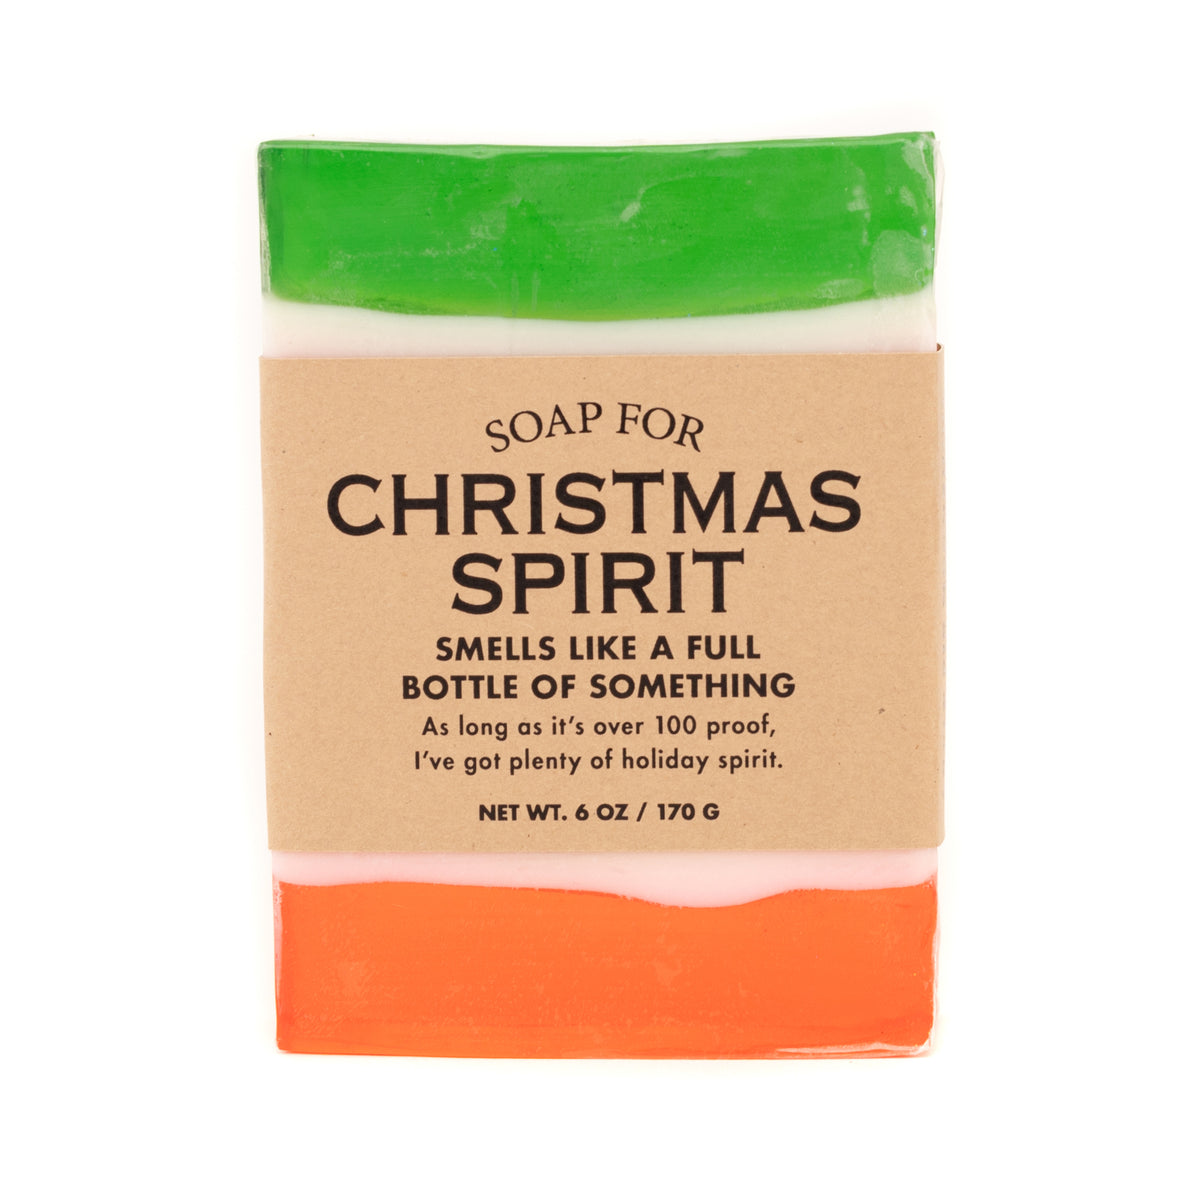 A Soap For Christmas Spirit